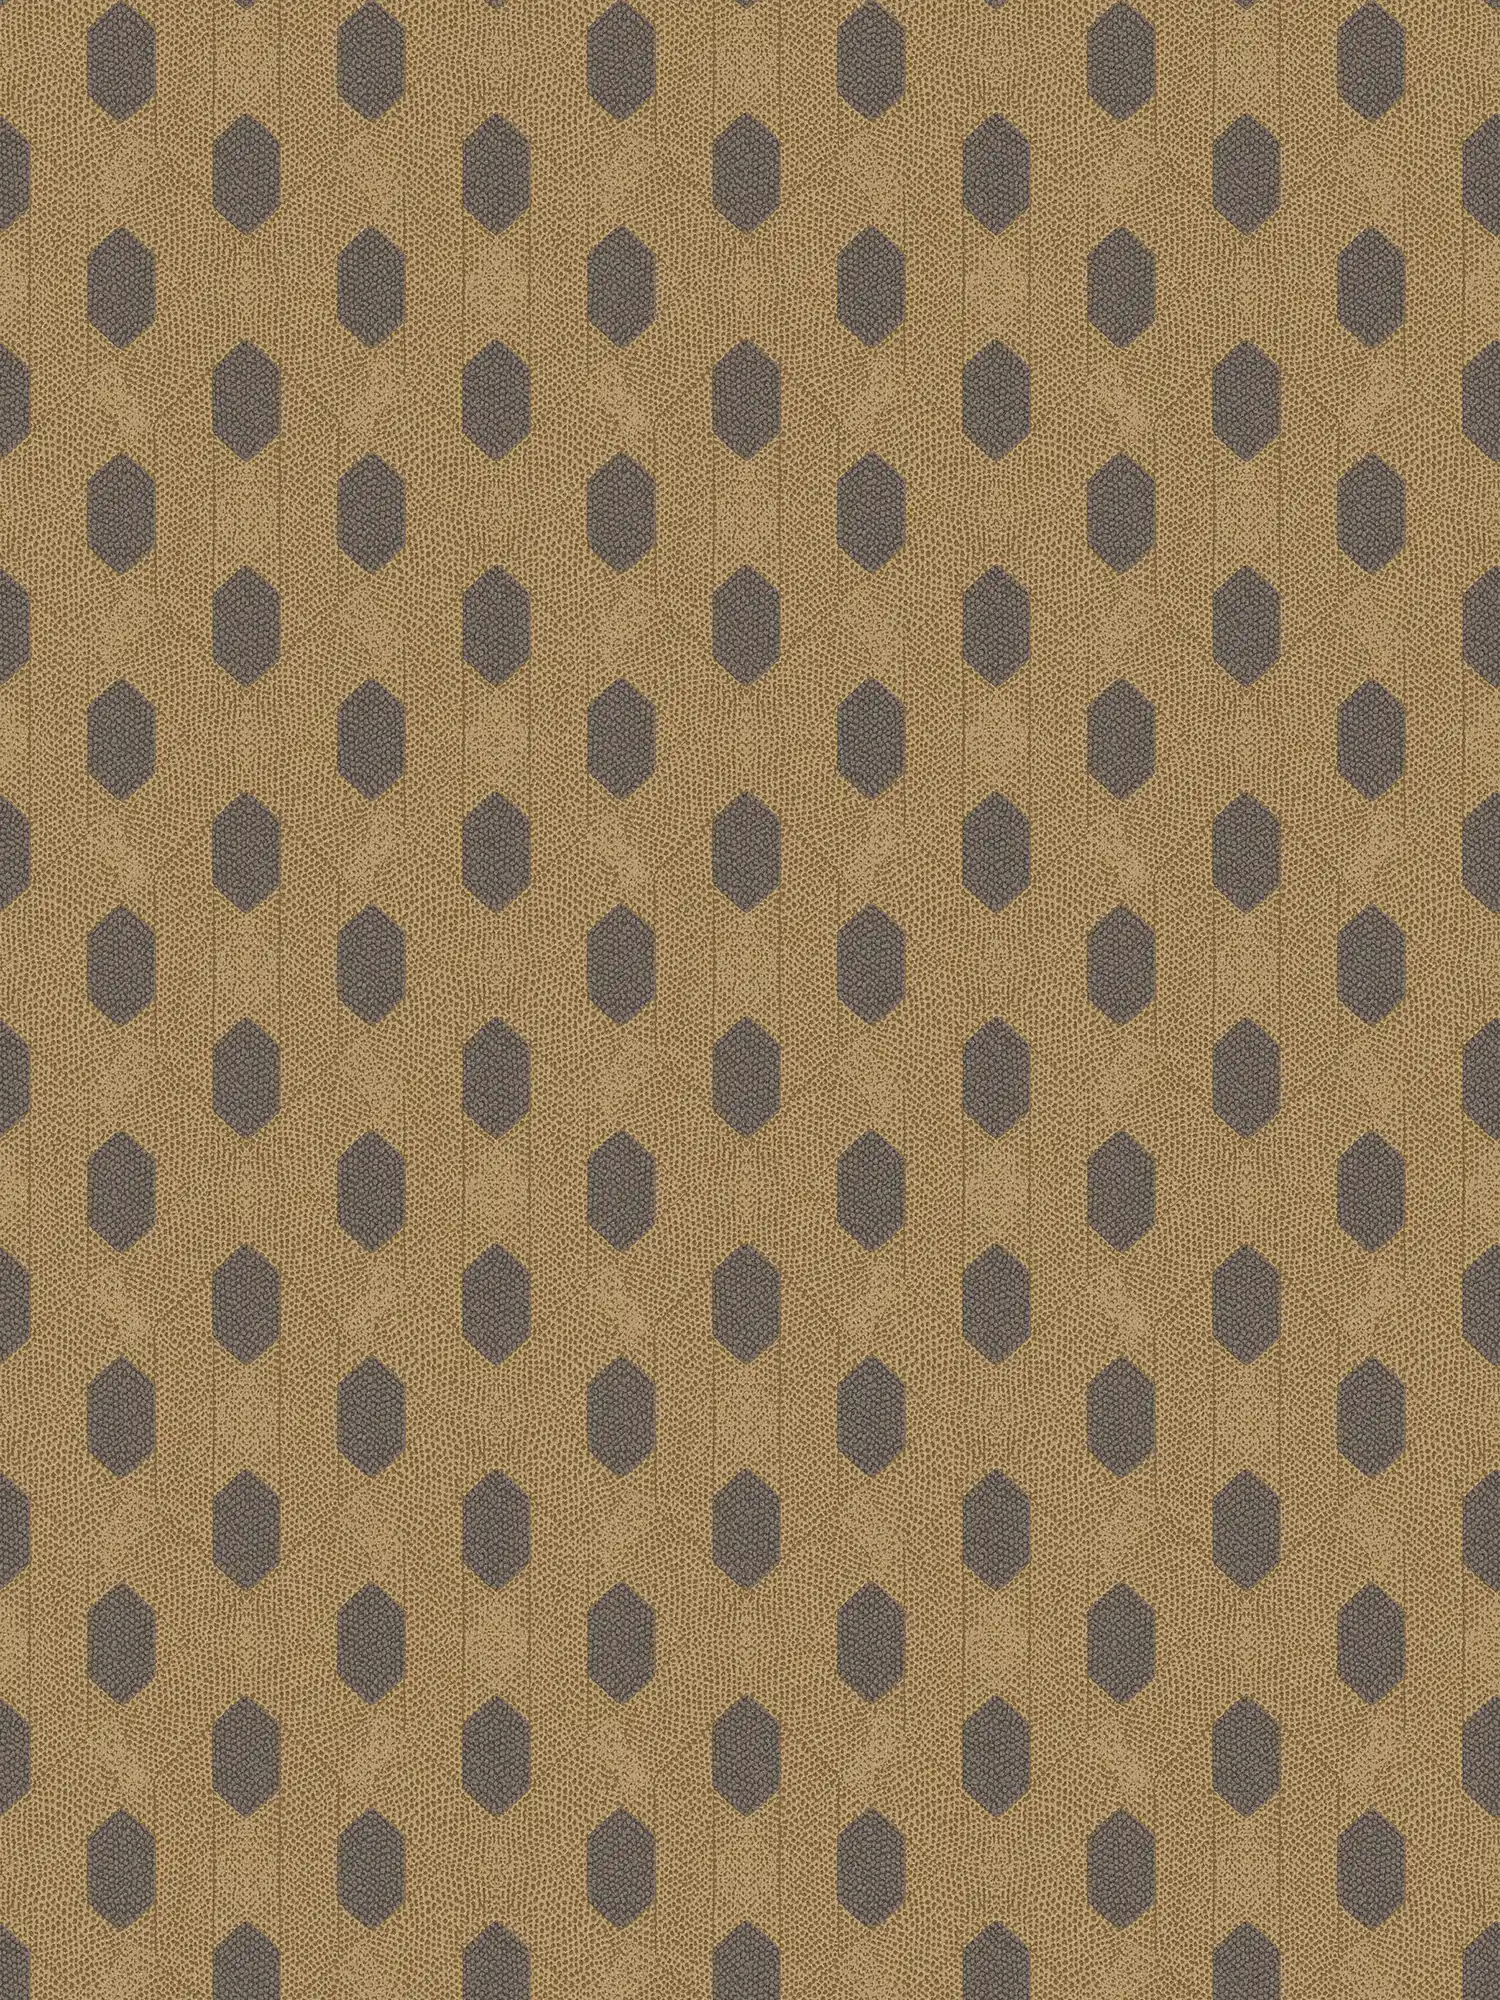 Papier peint intissé or à motifs géométriques - marron, or, noir
